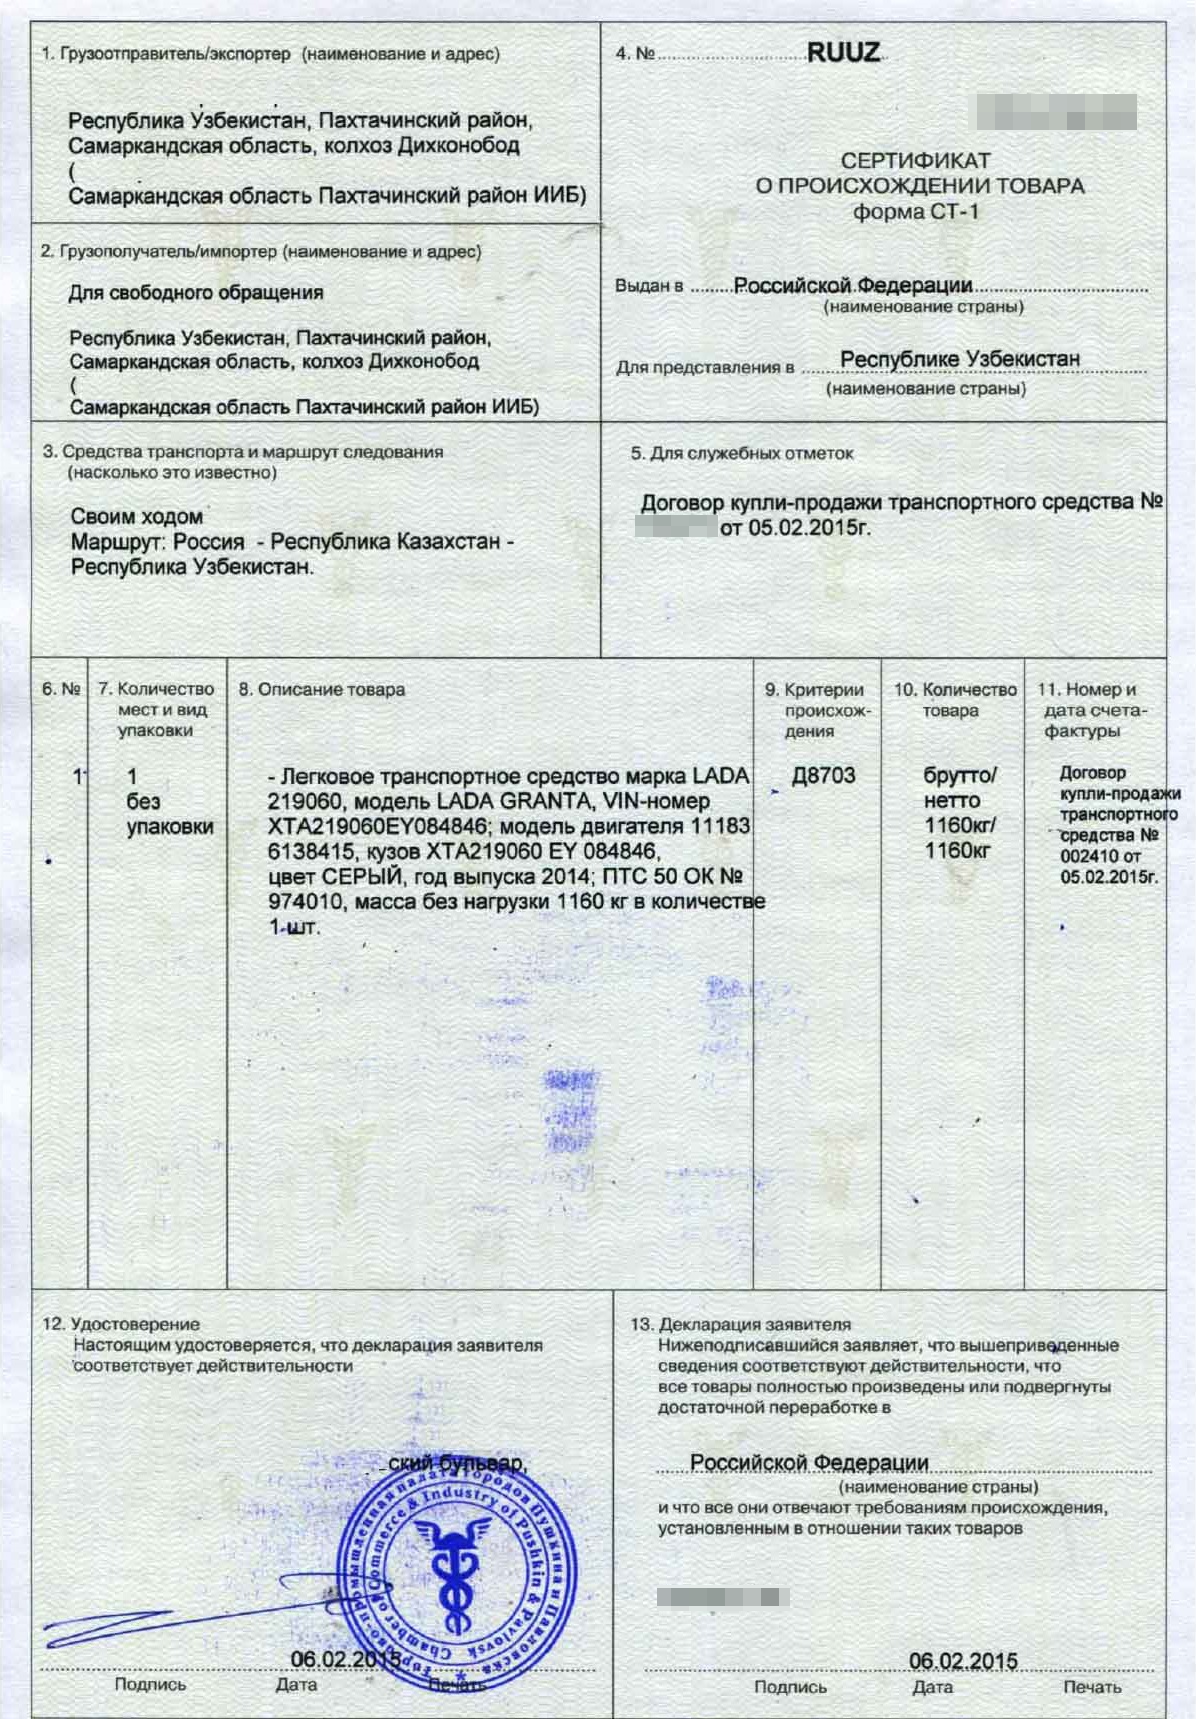 Так выглядит сертификат российского происхождения товара СТ-1